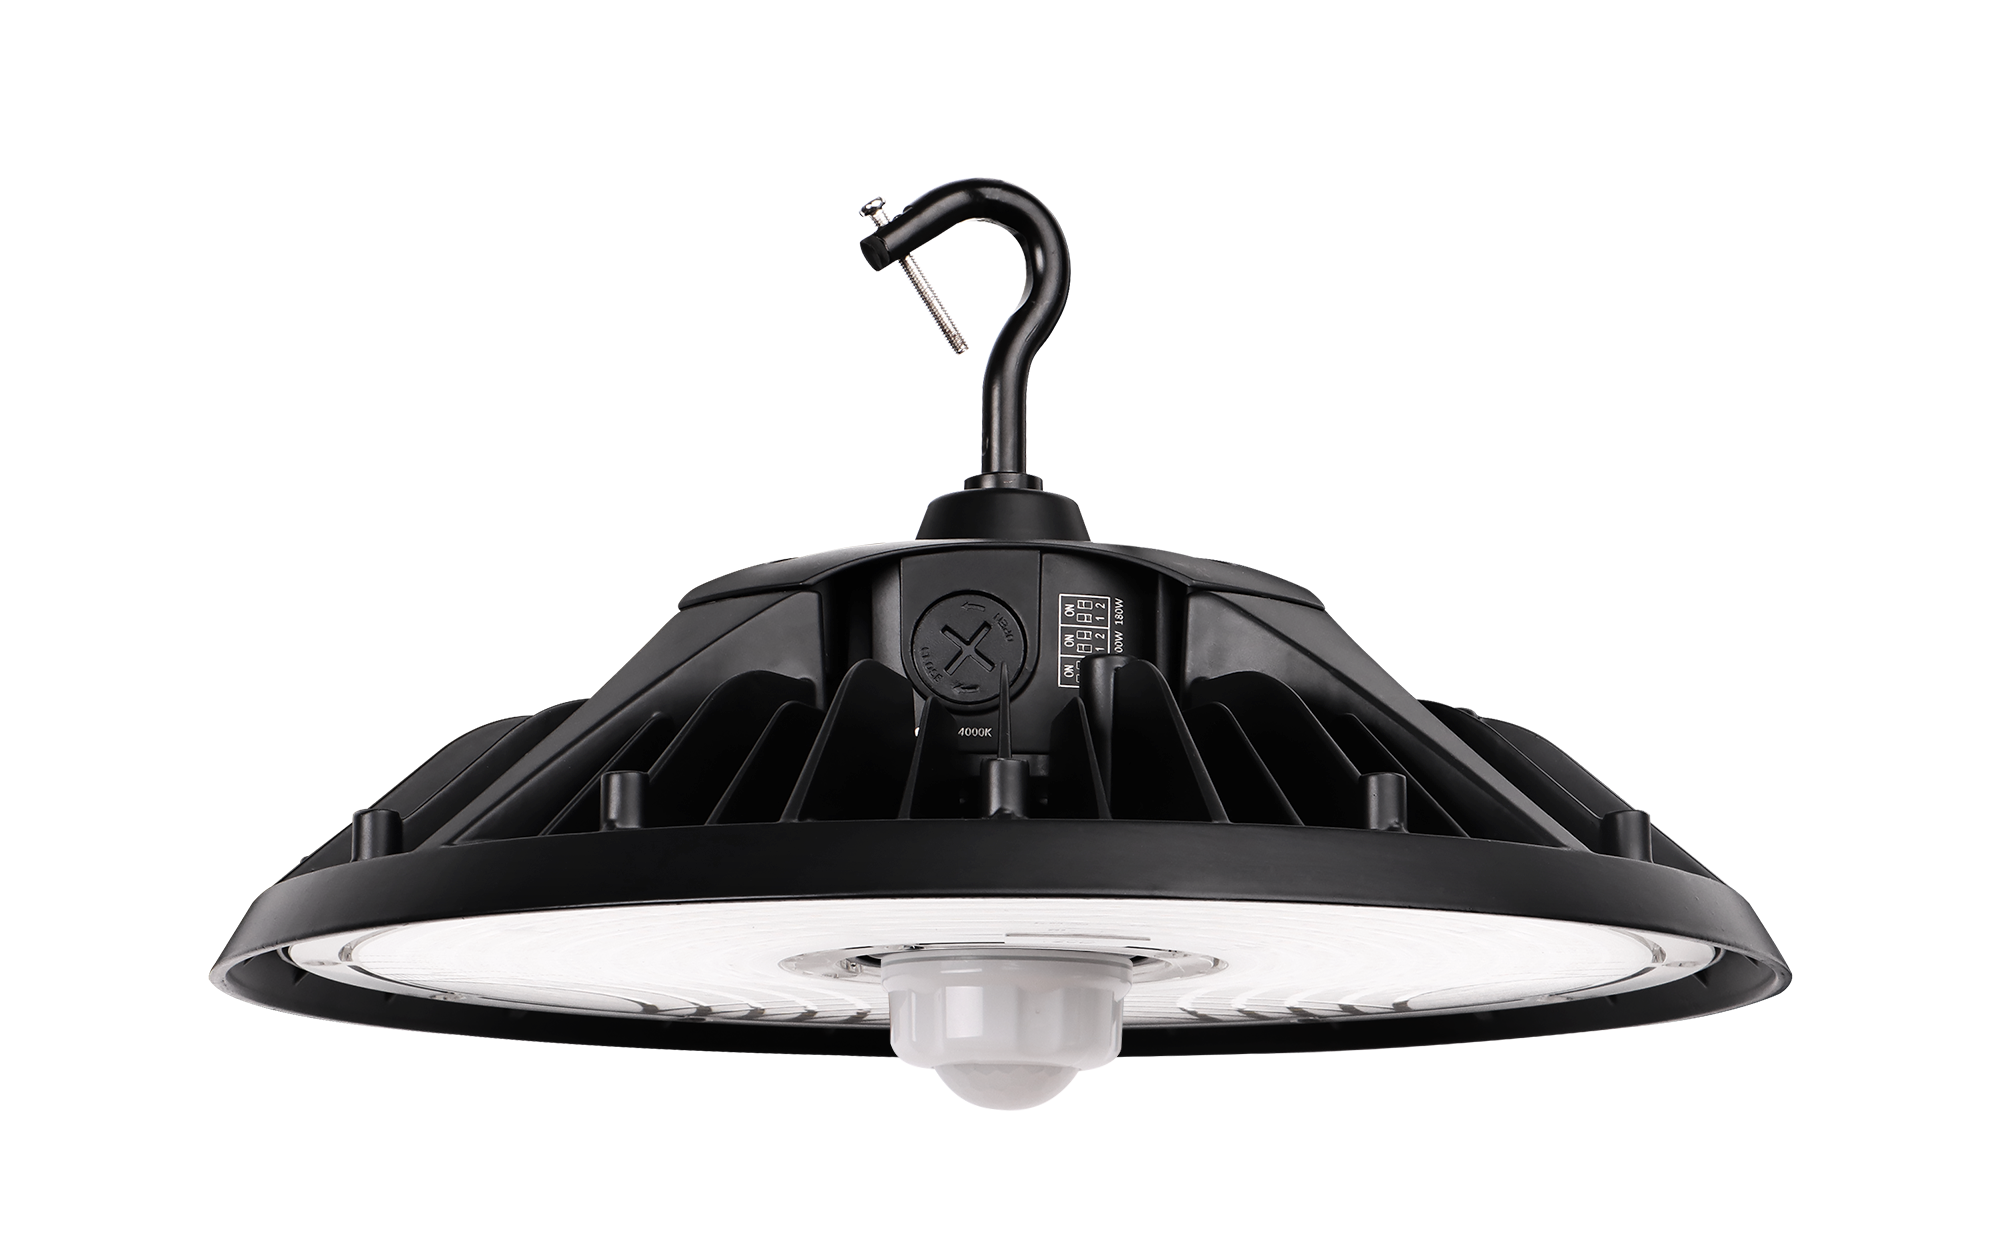 240W High-Efficiency LED UFO Light, 5000K, 36,240 Lumens, AC277-480V, 0-10V Dimmable, DLC 5.1 Certified - Eco LED Lightings 